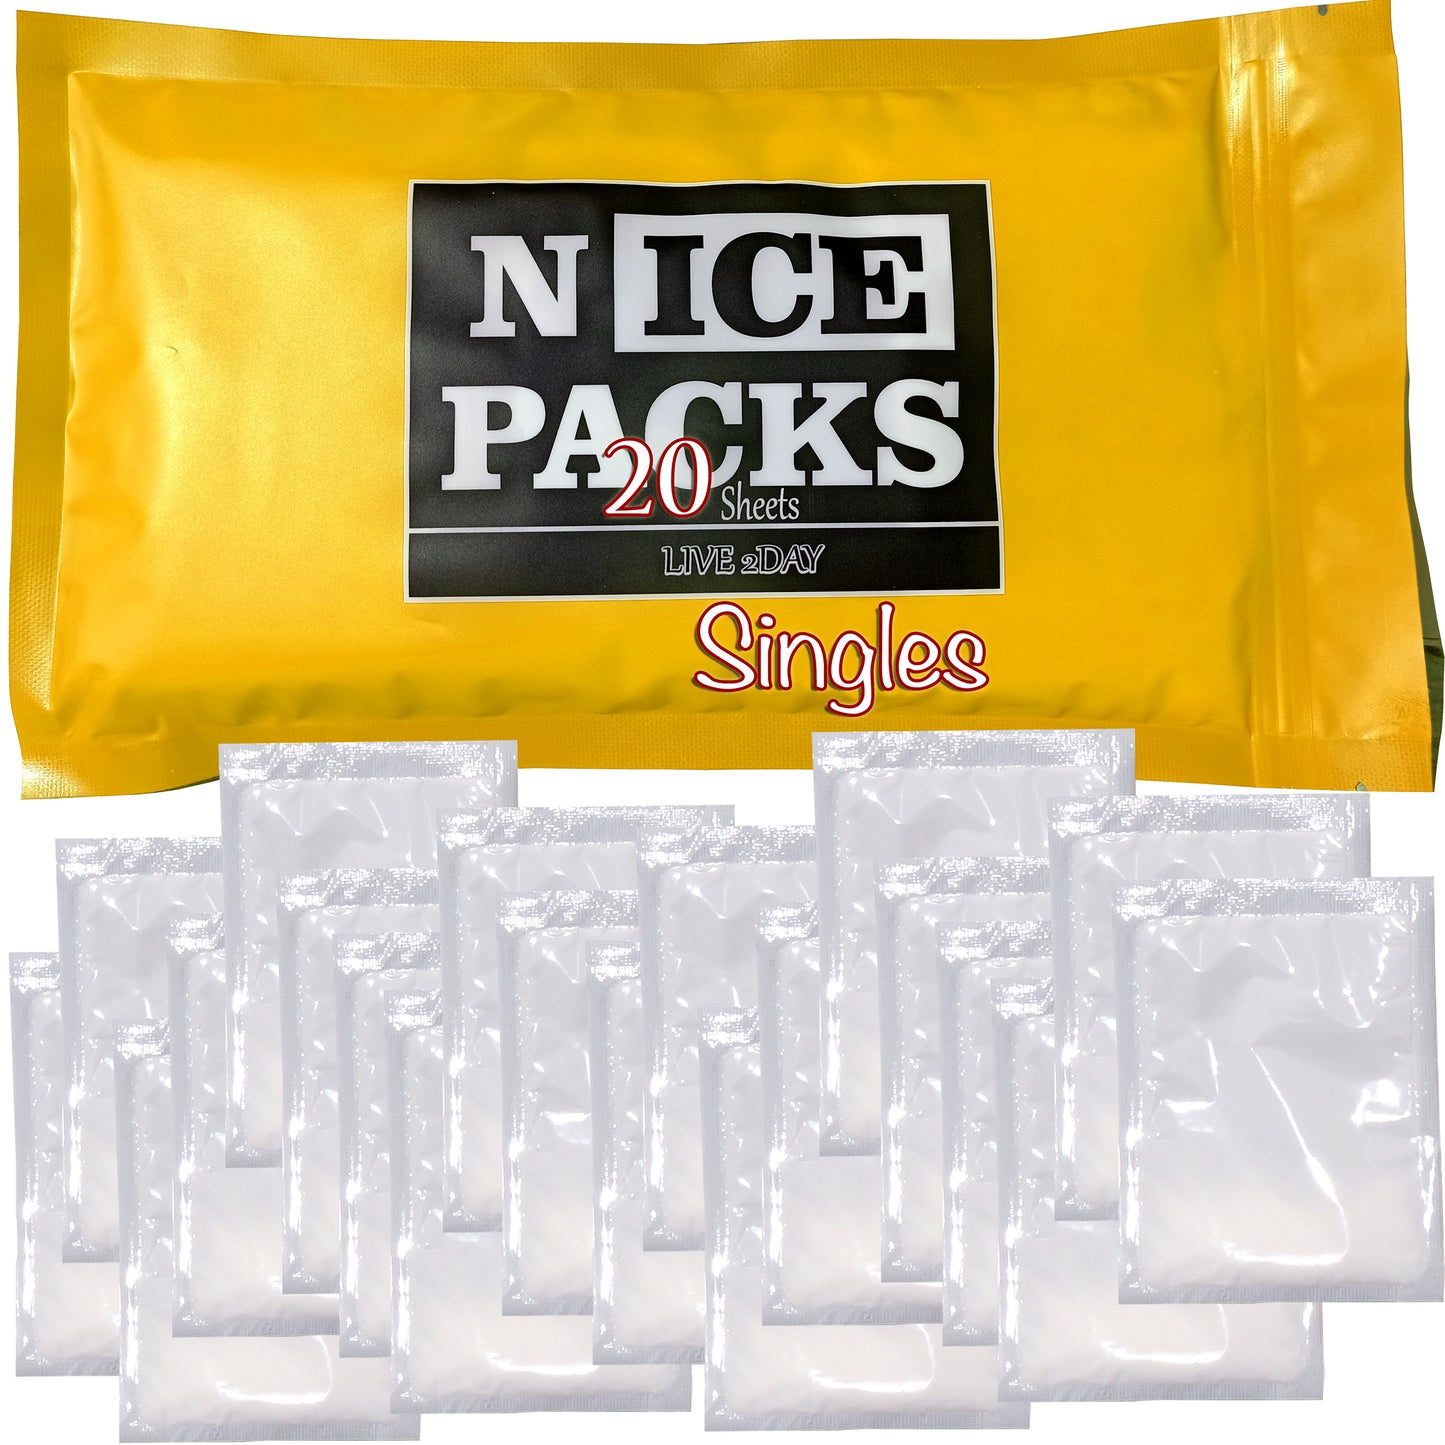 Nice Packs Singles